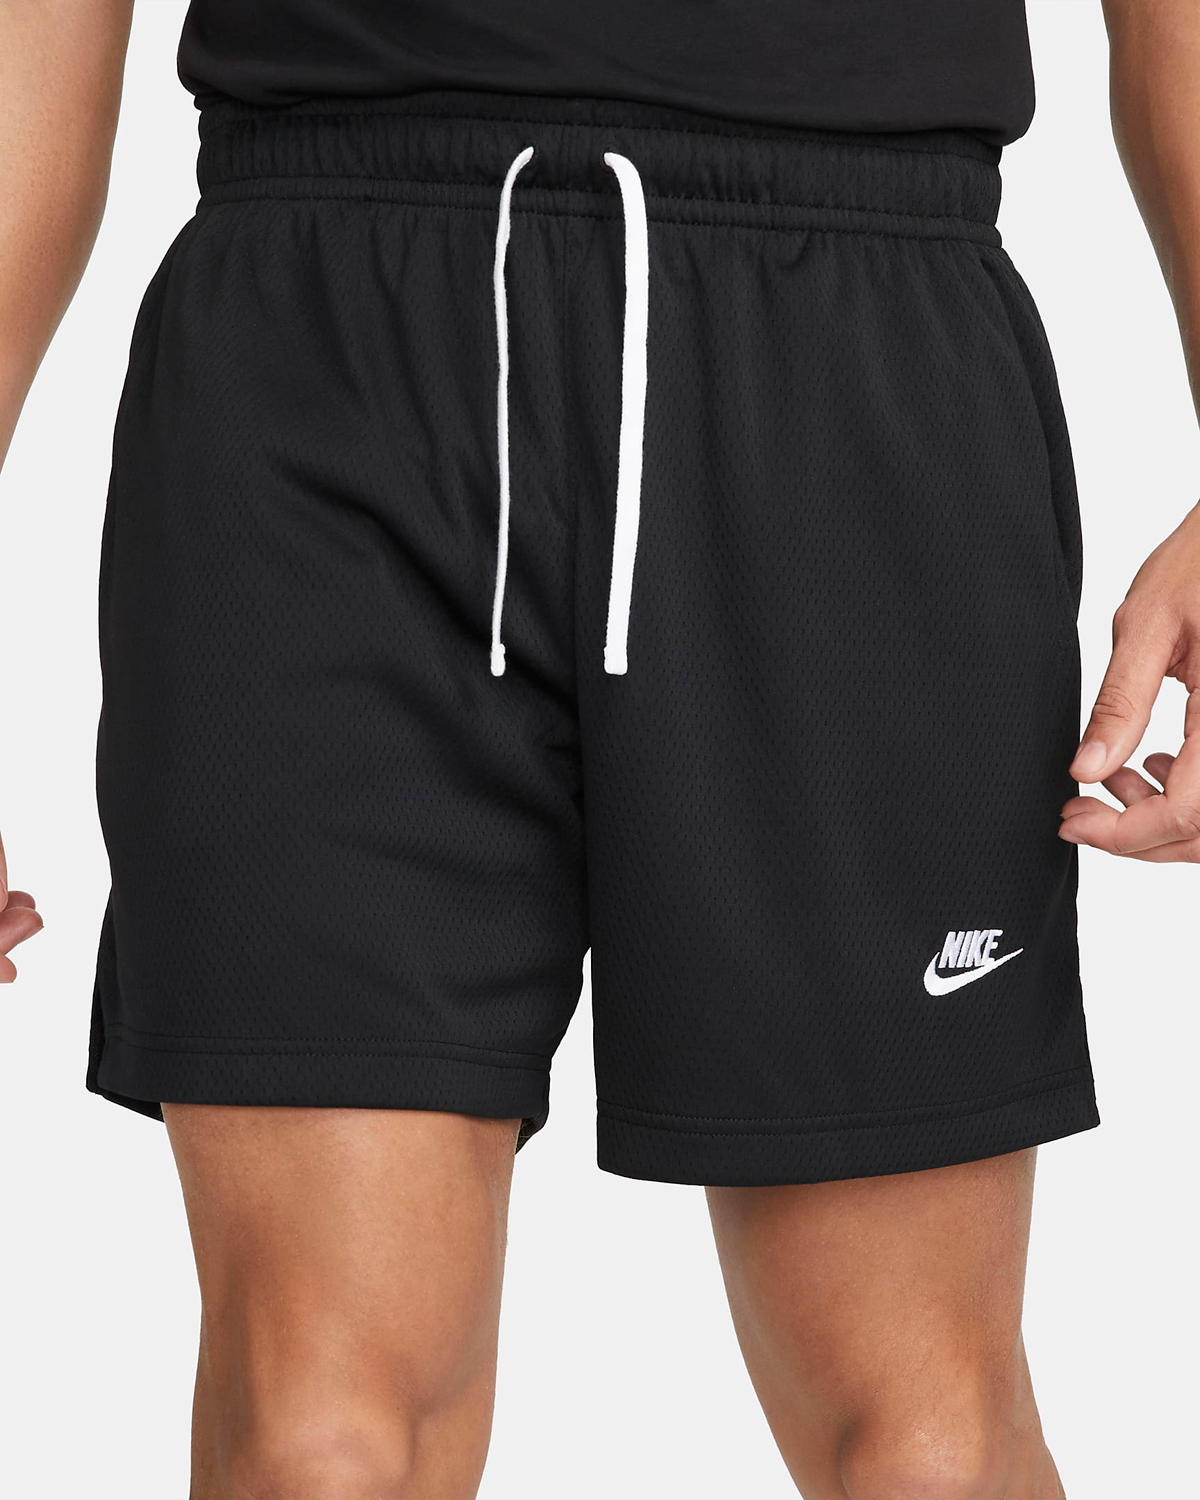 Nike-Club-Mesh-Flow-Shorts-Black-White